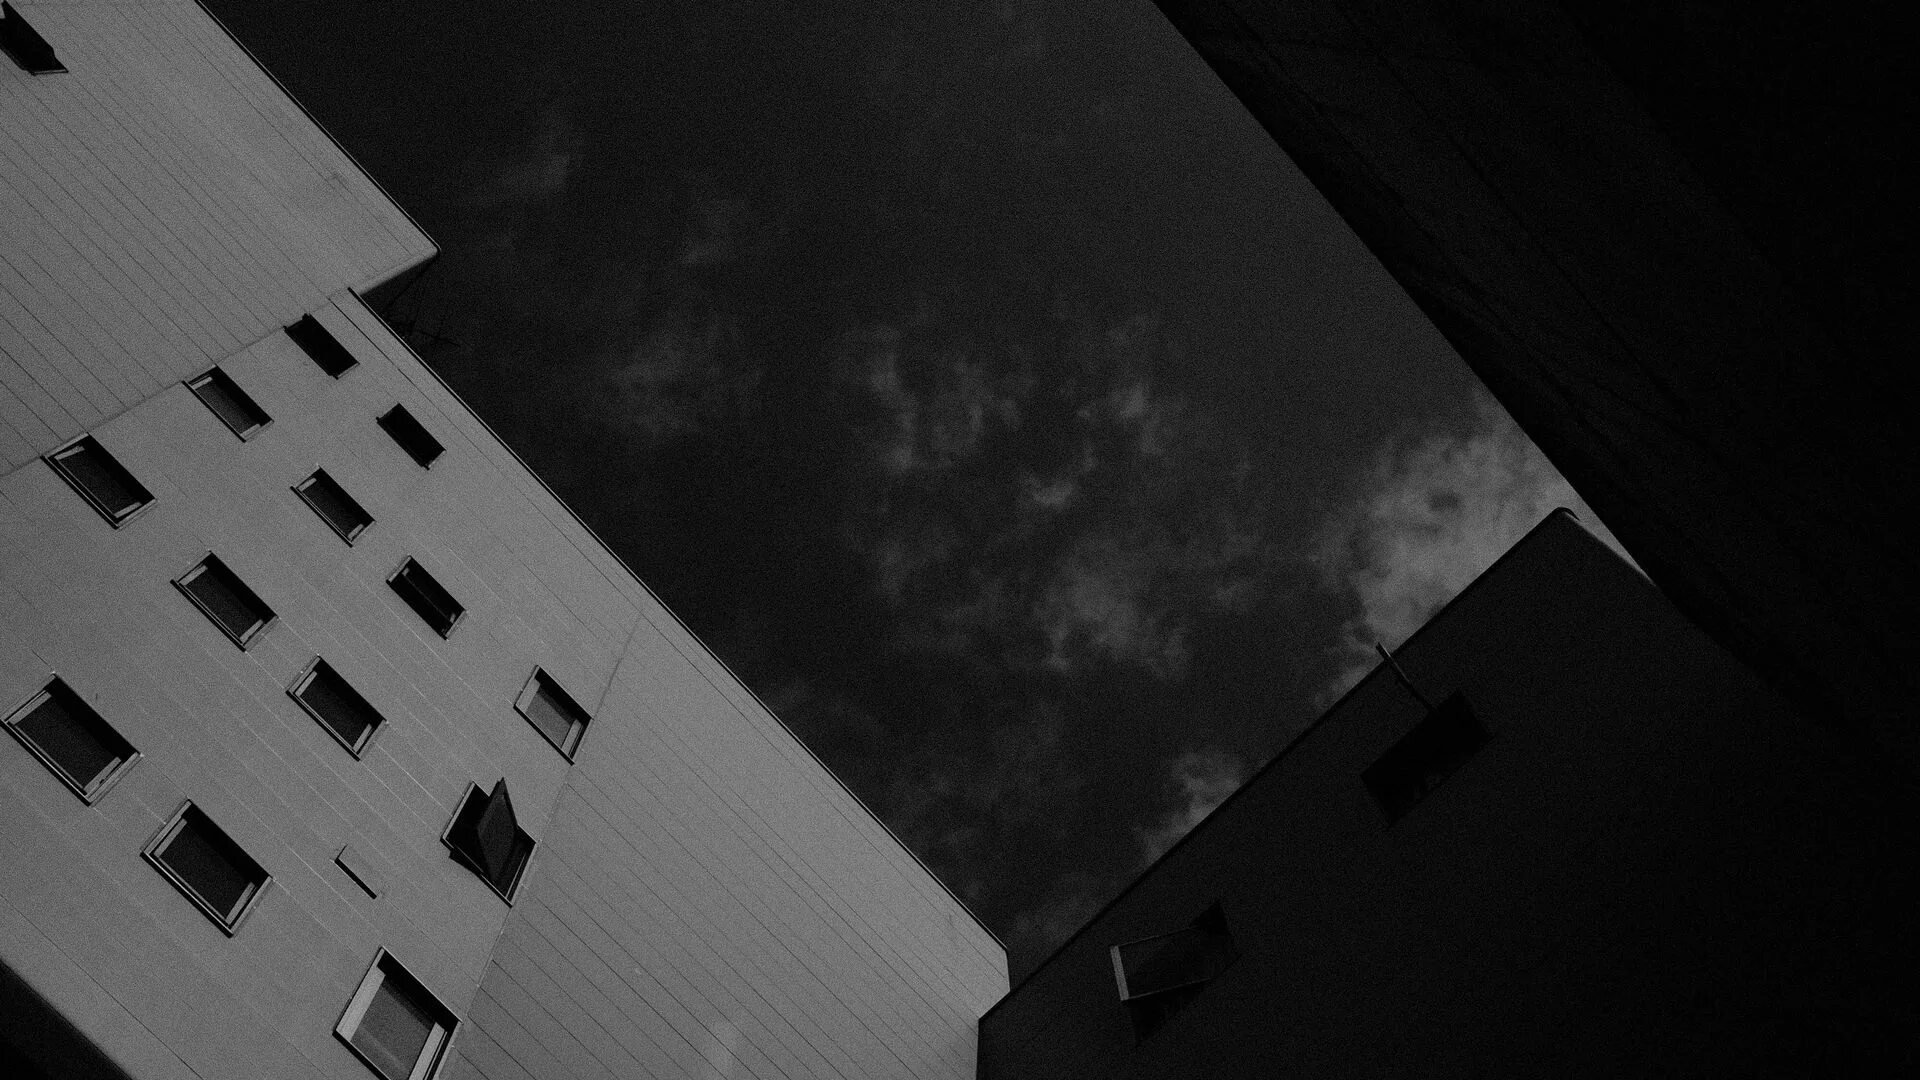 Одна сверху другая снизу. Вид снизу на здания чб. Фото зданий чб. Темный фон со зданиями Минимализм. Луна среди зданий снизу вверх серая.